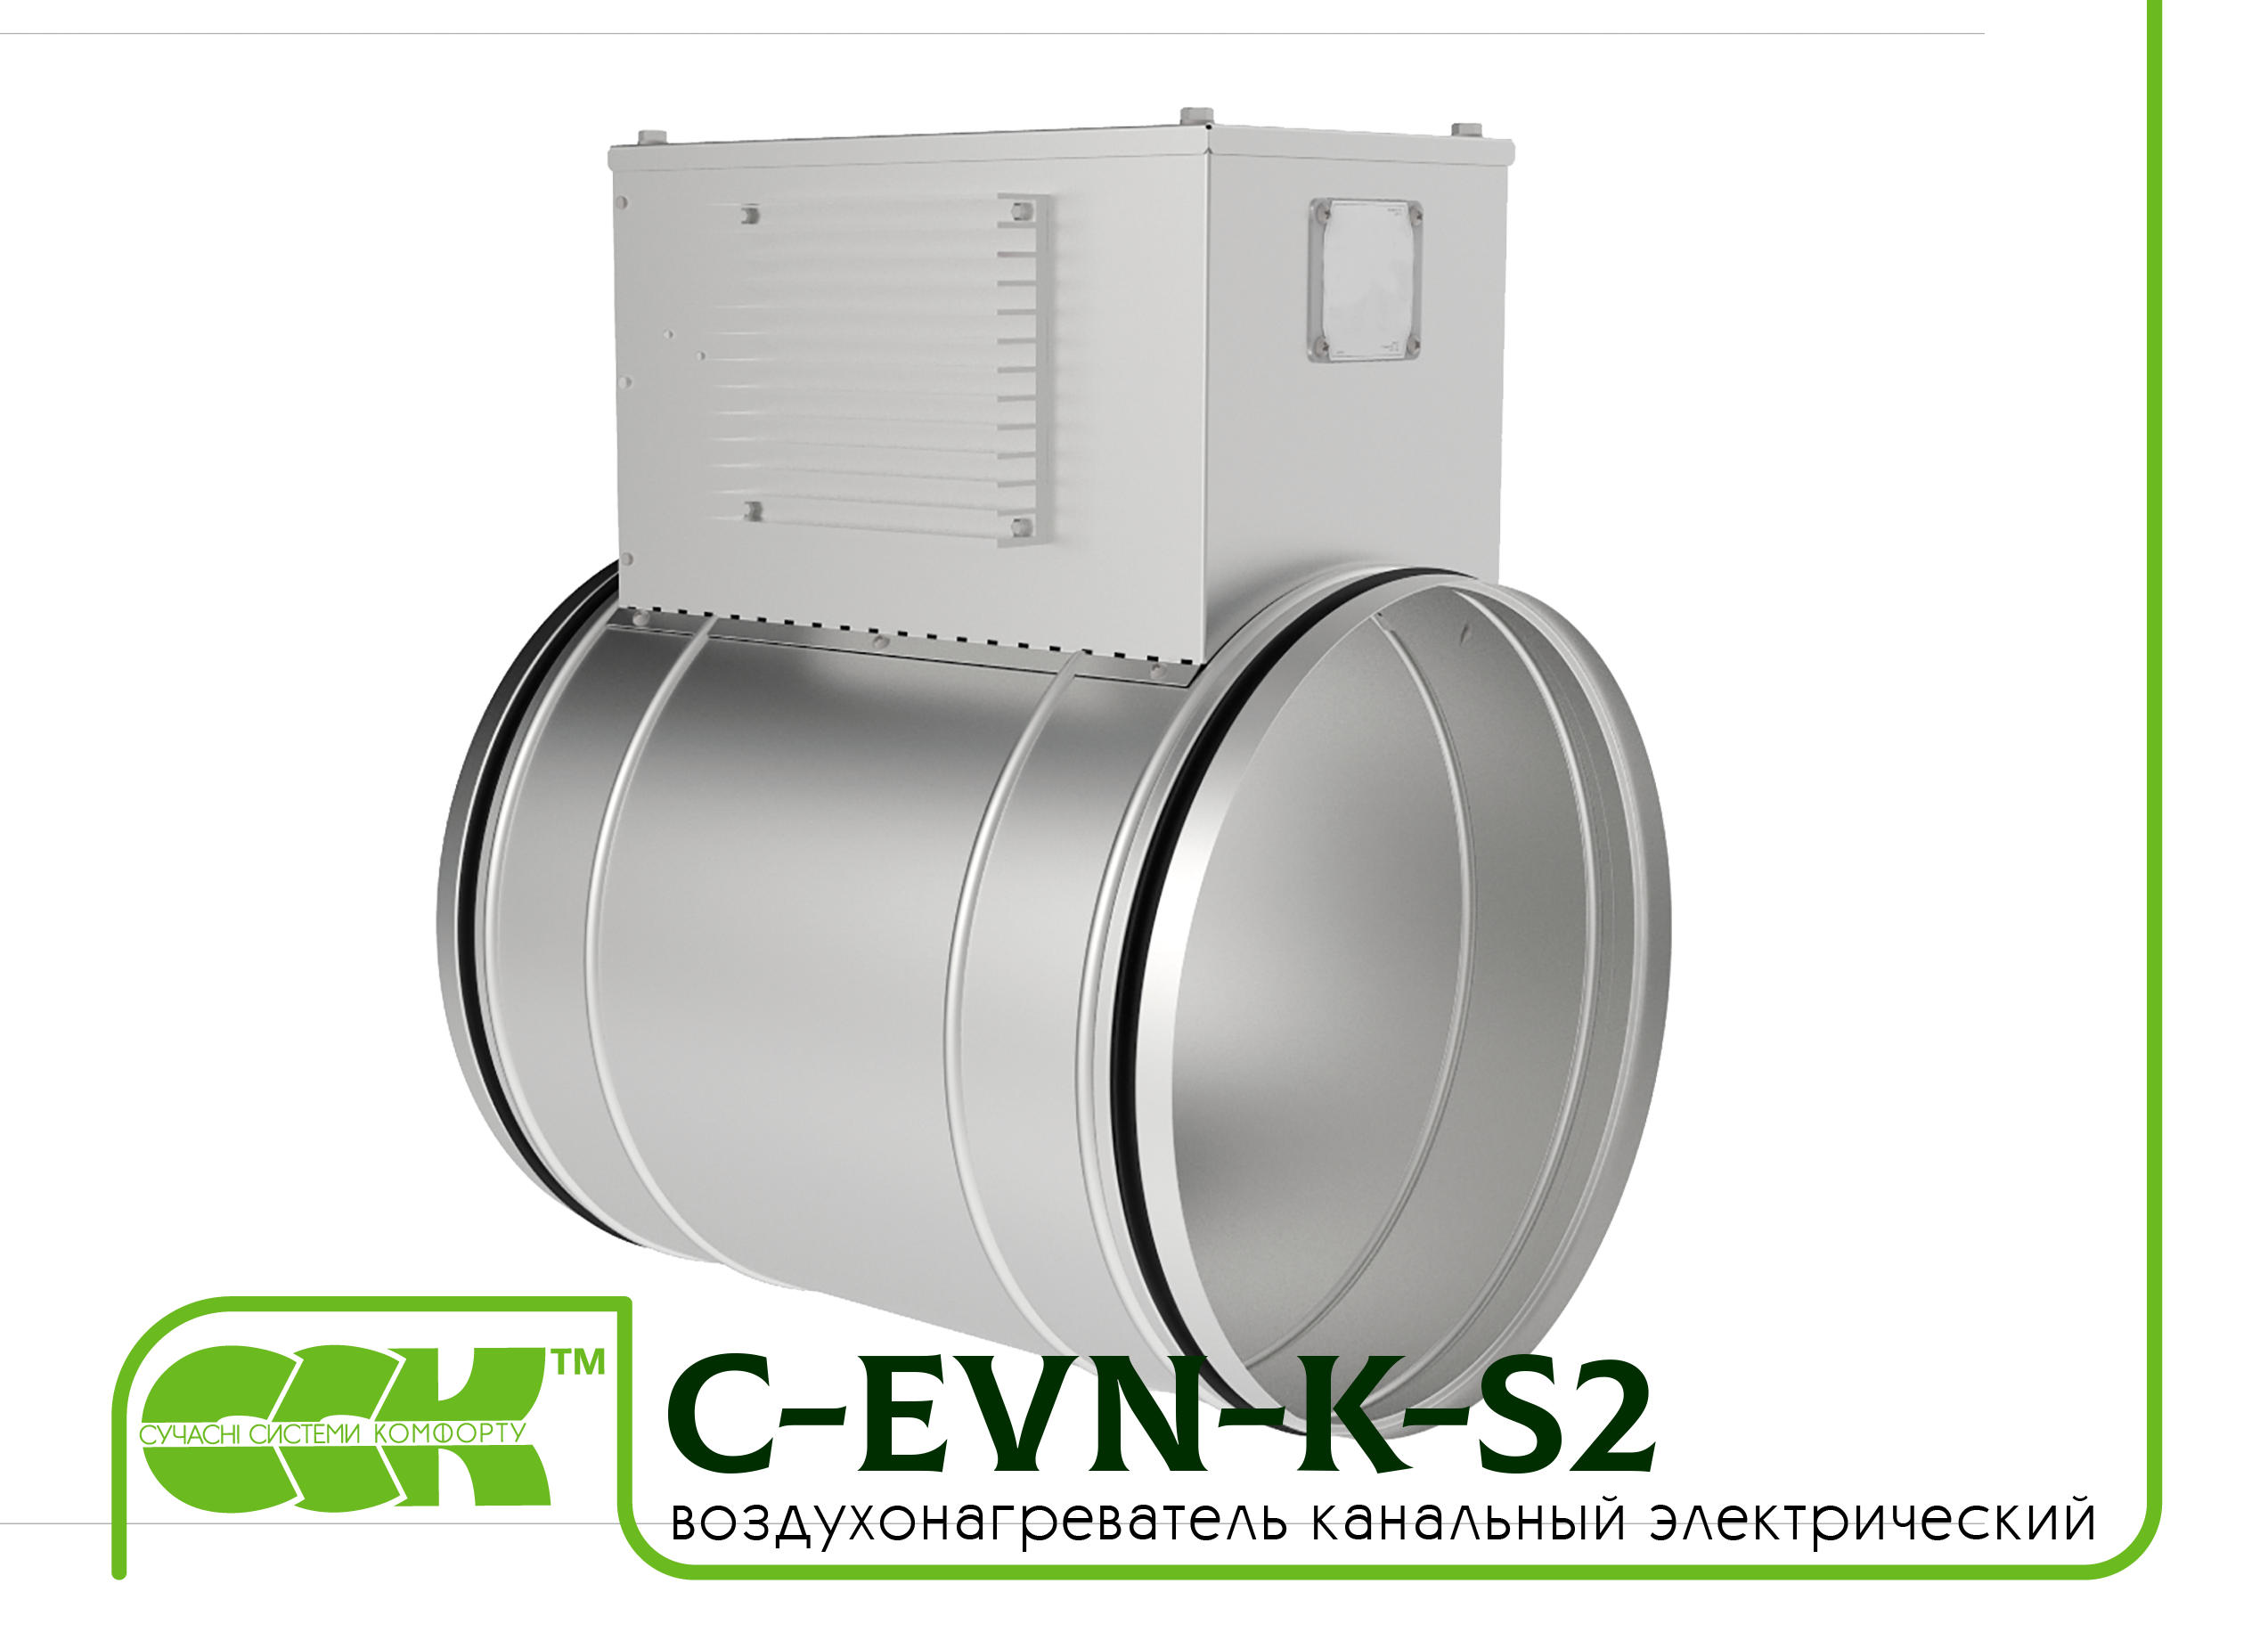 Воздухонагреватель канальный электрический для круглых каналов C-EVN-K-S2-250-3,0